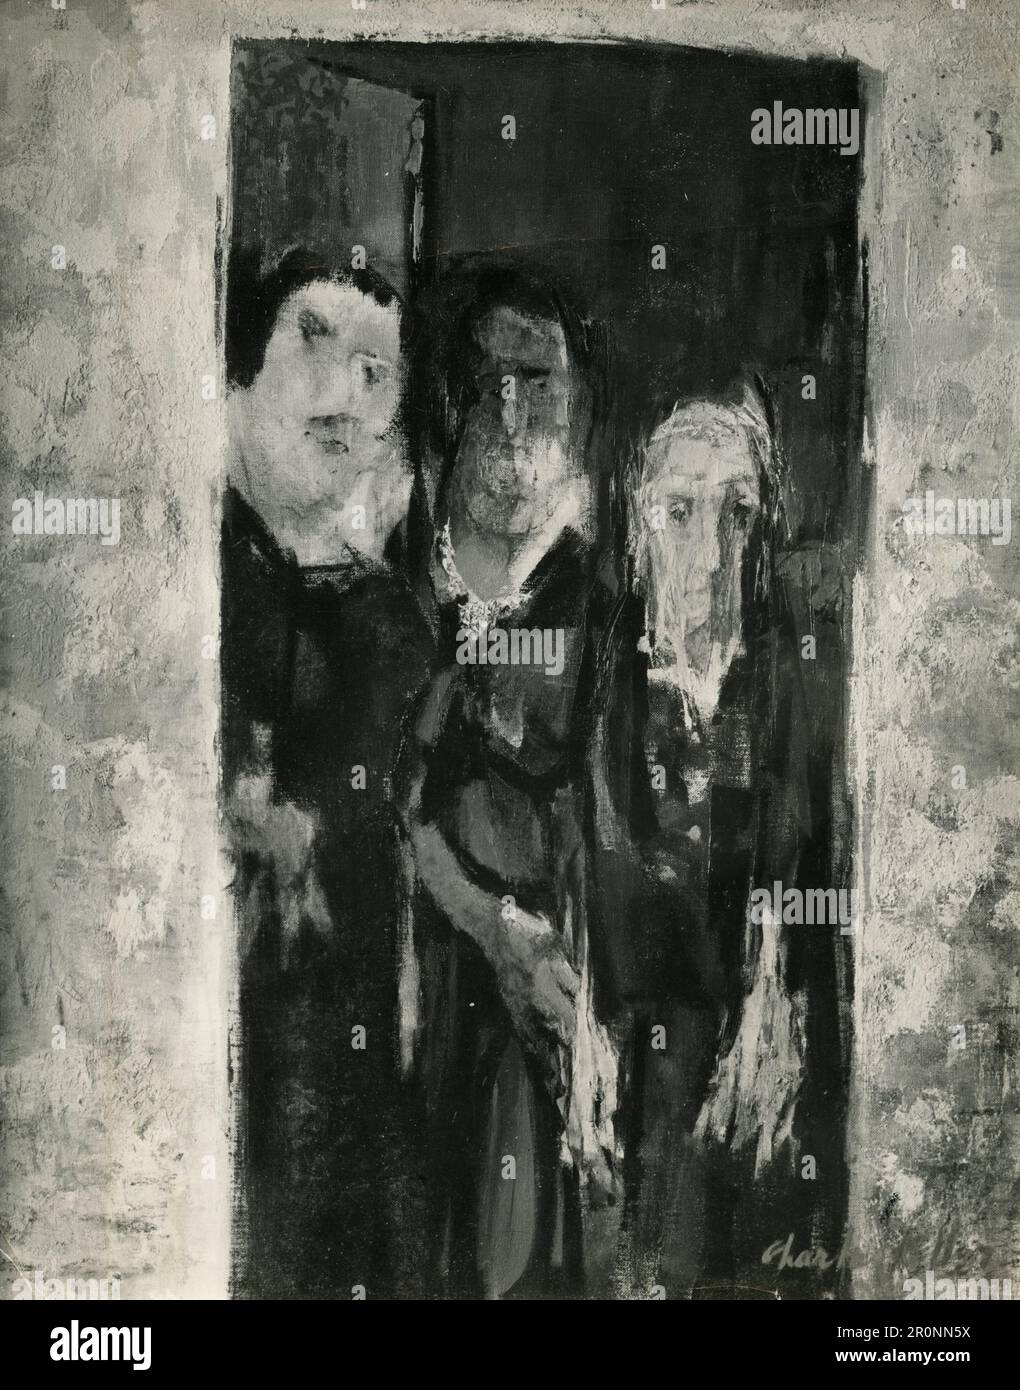 Los supervivientes, pintura de artista no identificado, 1964 Foto de stock